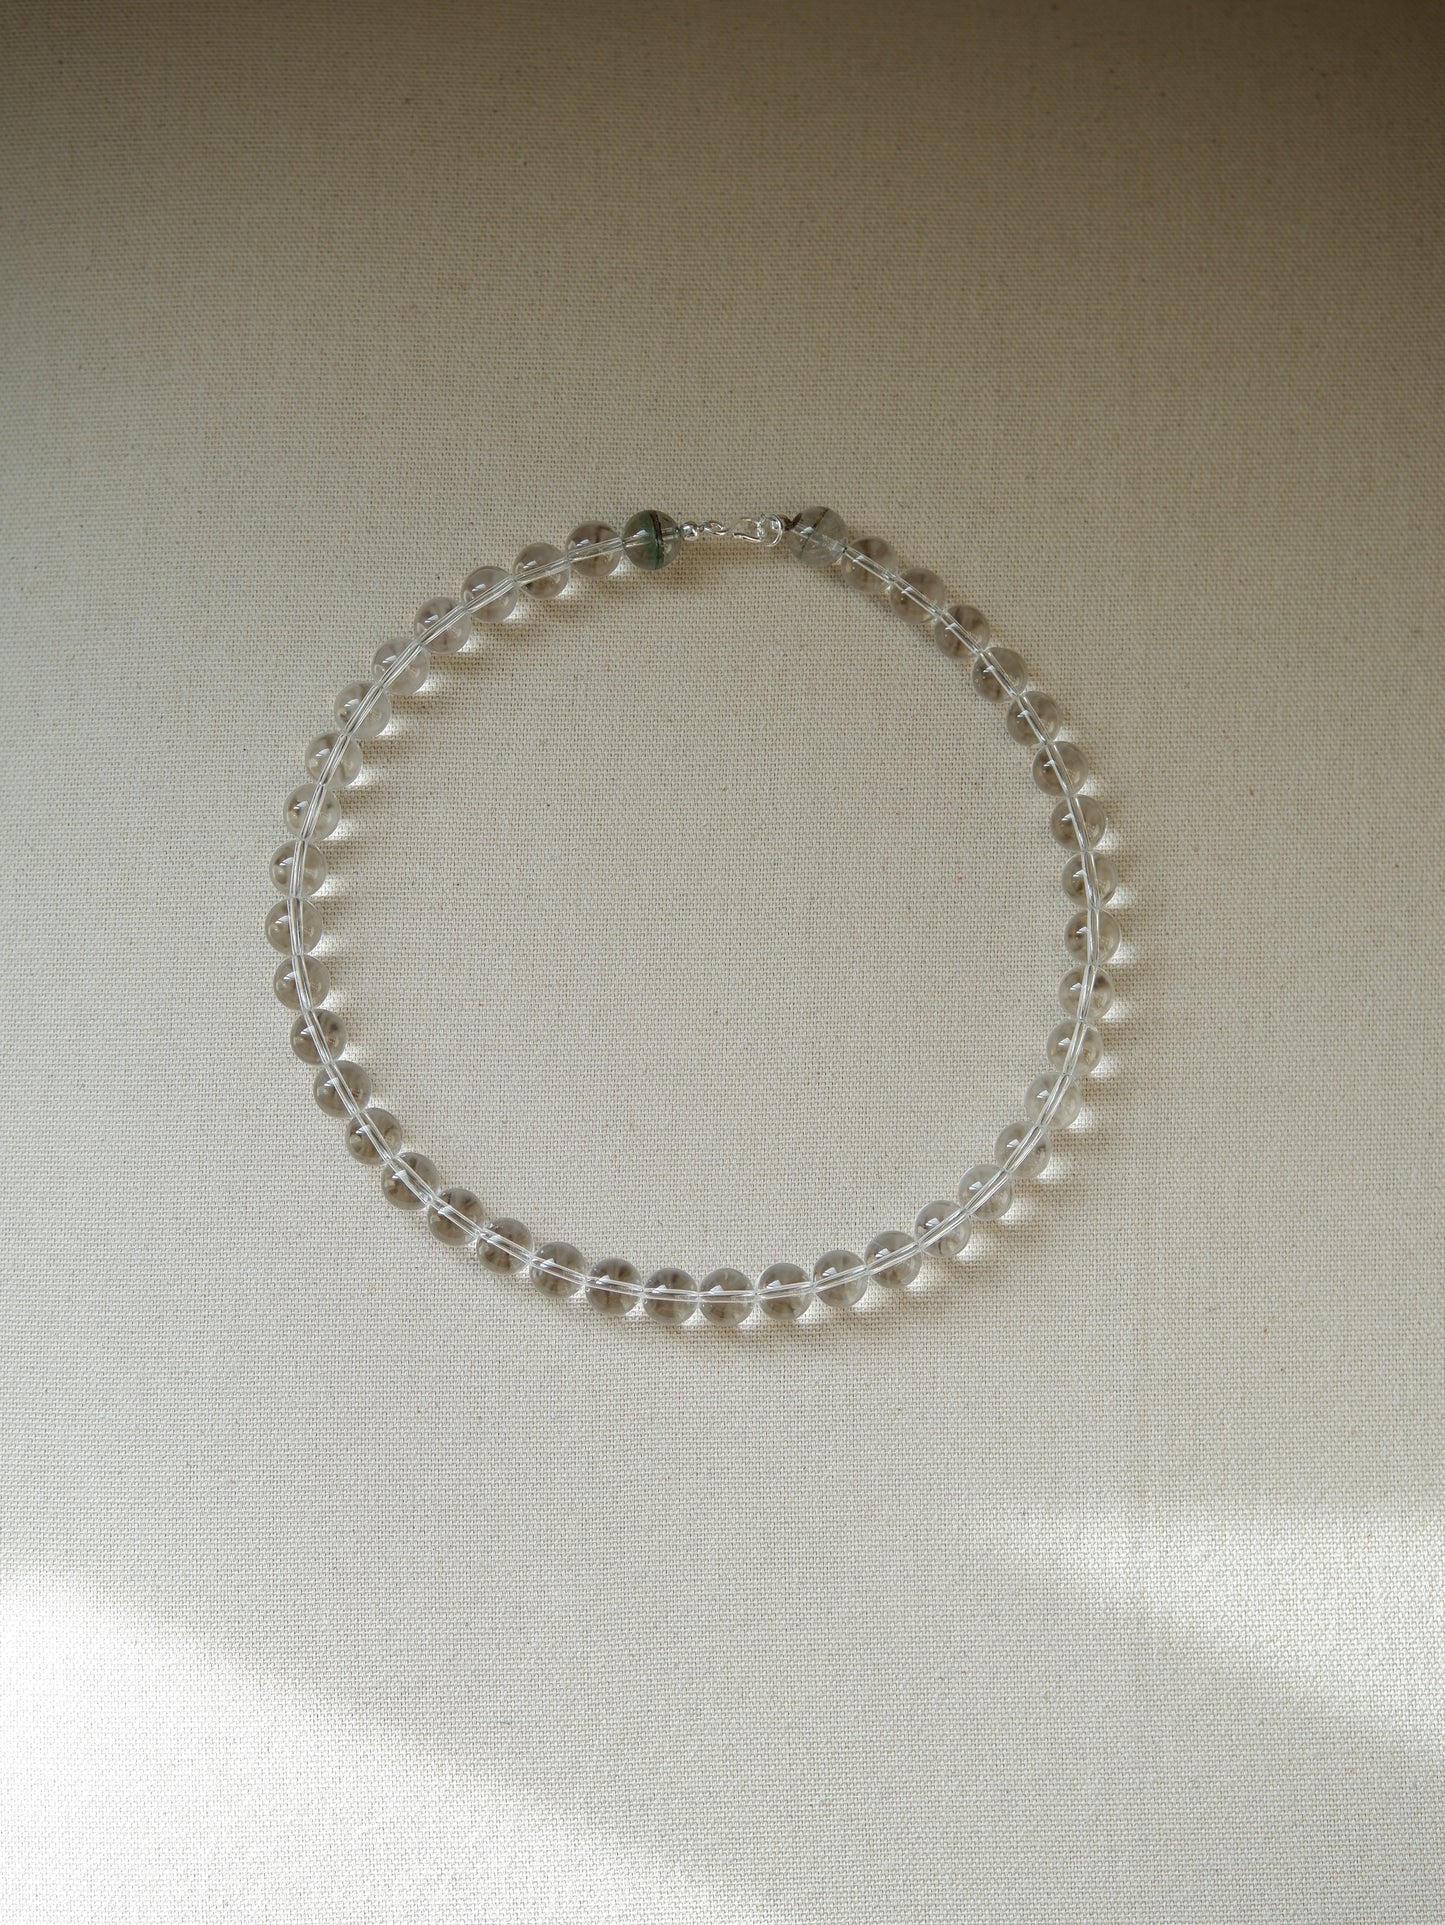 Quartz Sea Glass Necklace